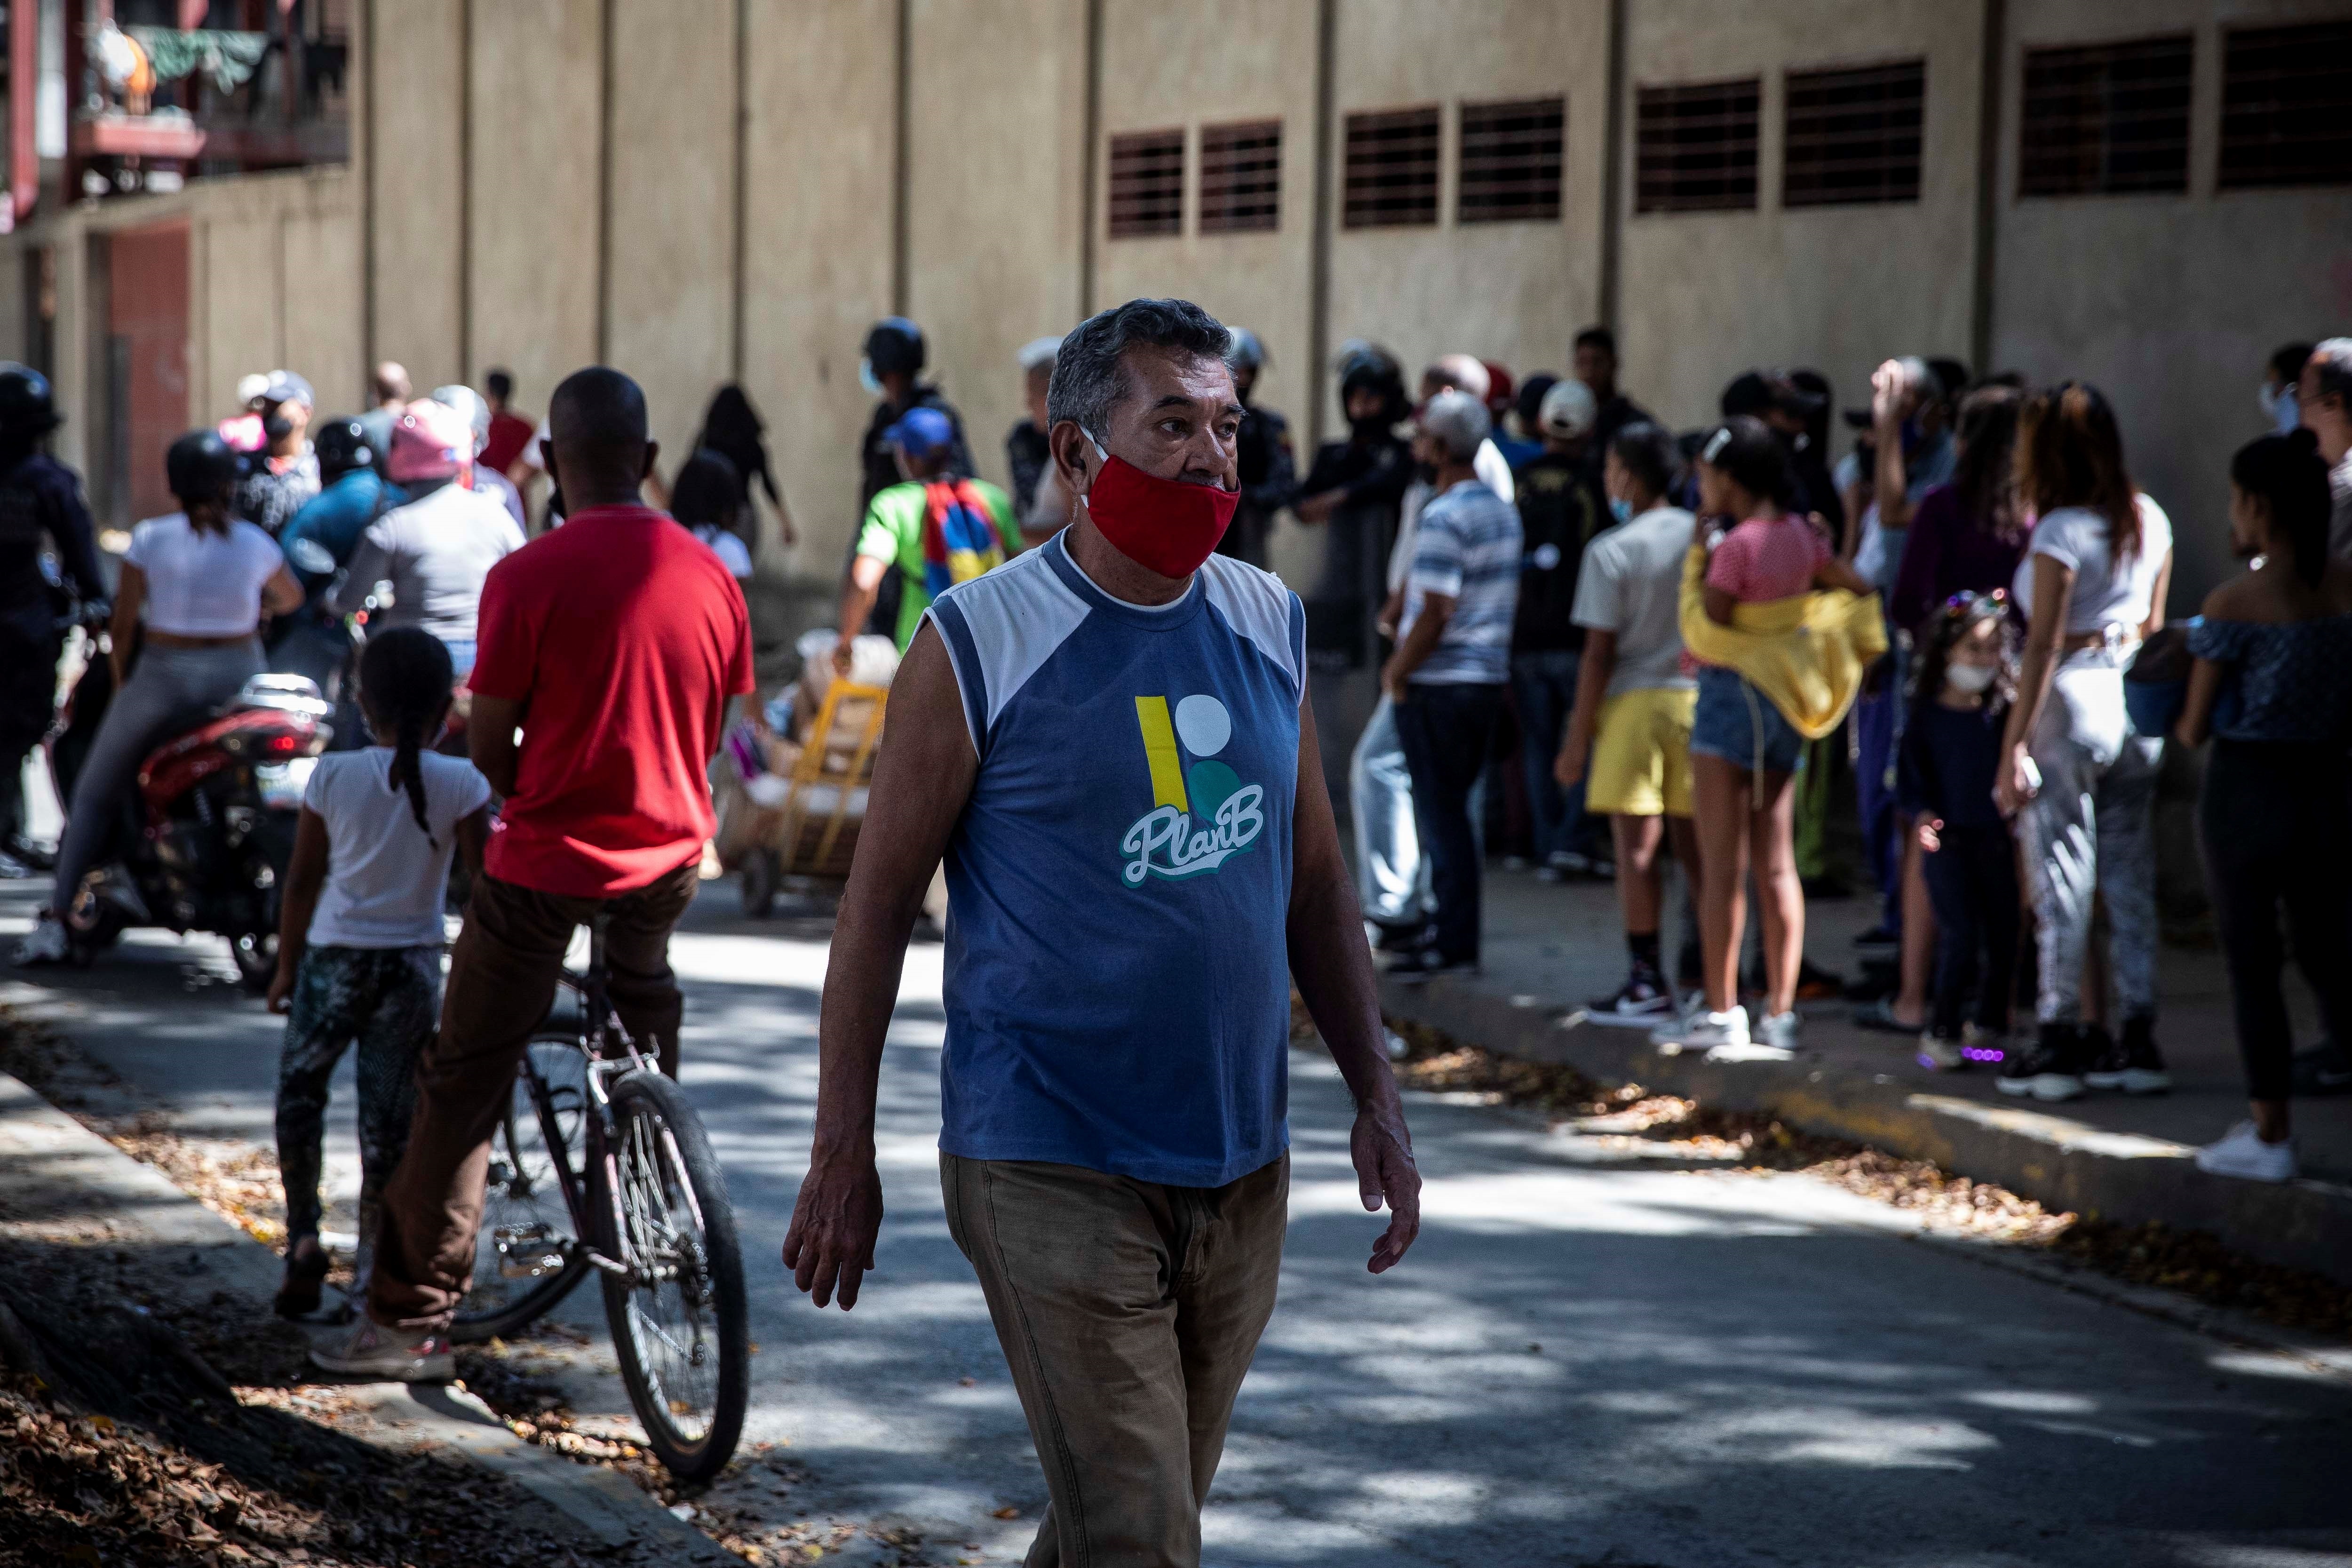 Luto sigue aumentando en Venezuela tras 18 nuevas muertes por Covid-19